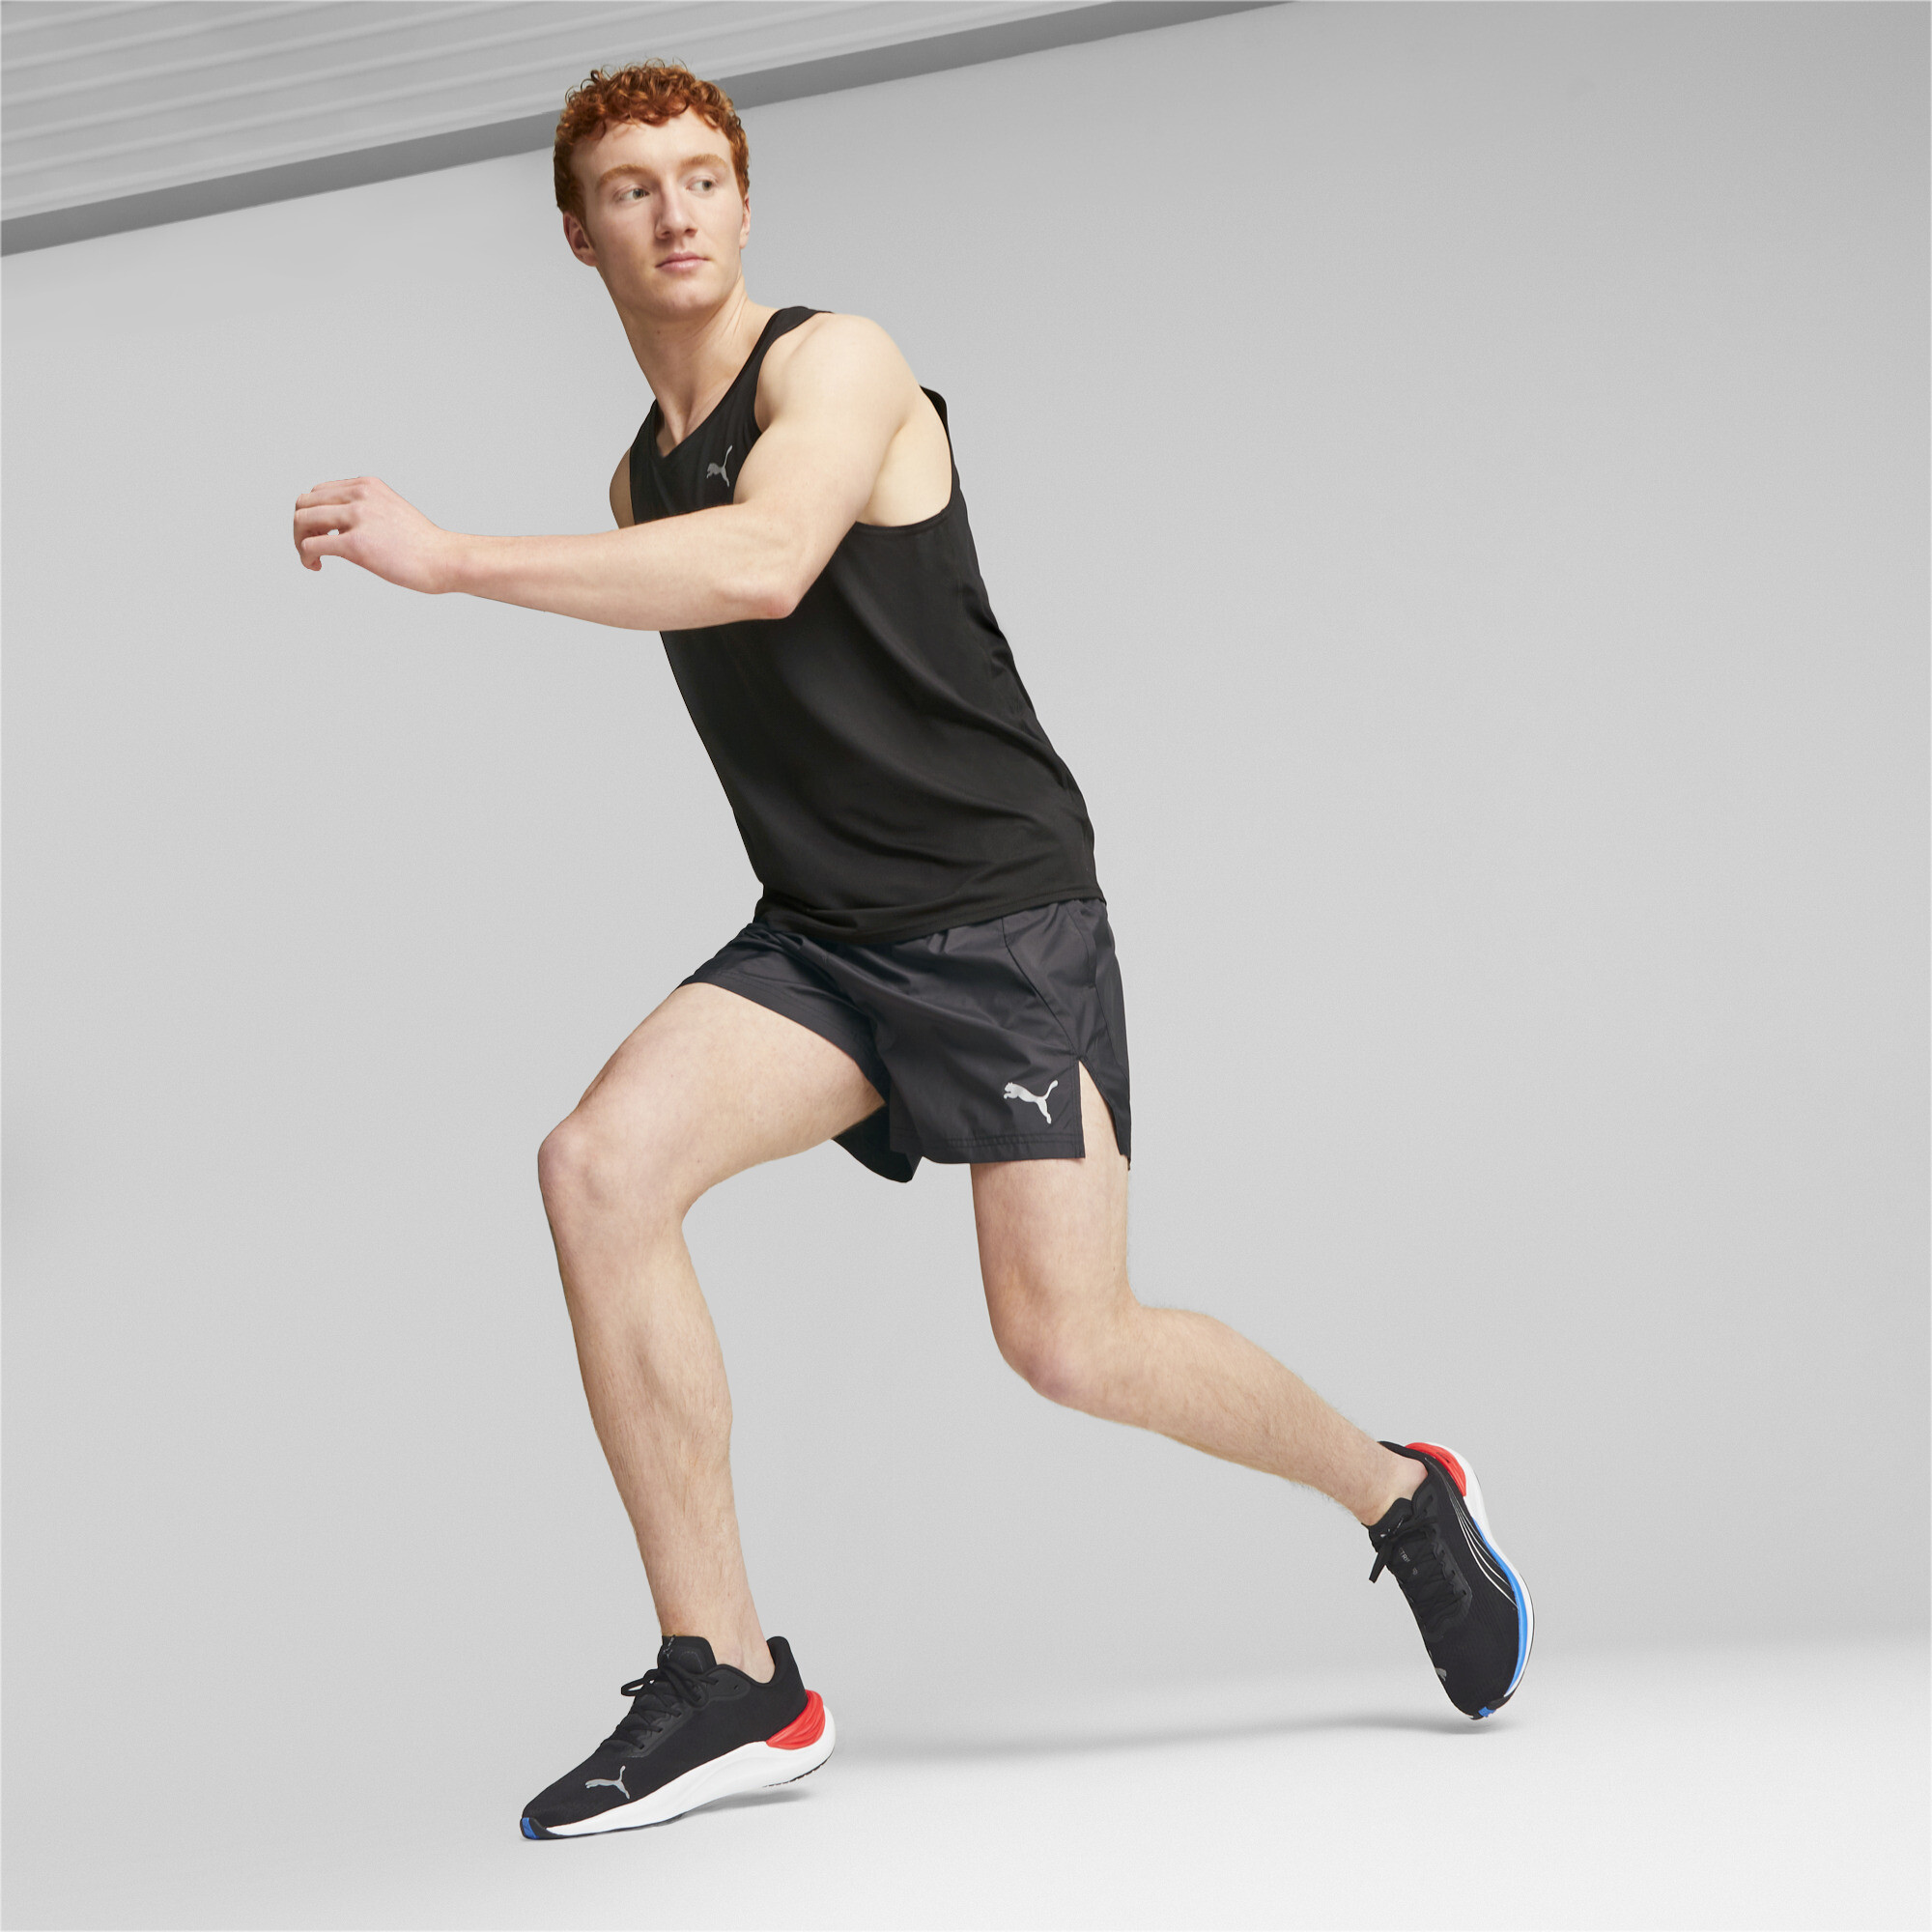 Men's PUMA Electrify NITROâ¢ 3 Running Shoes In Black, Size EU 40.5